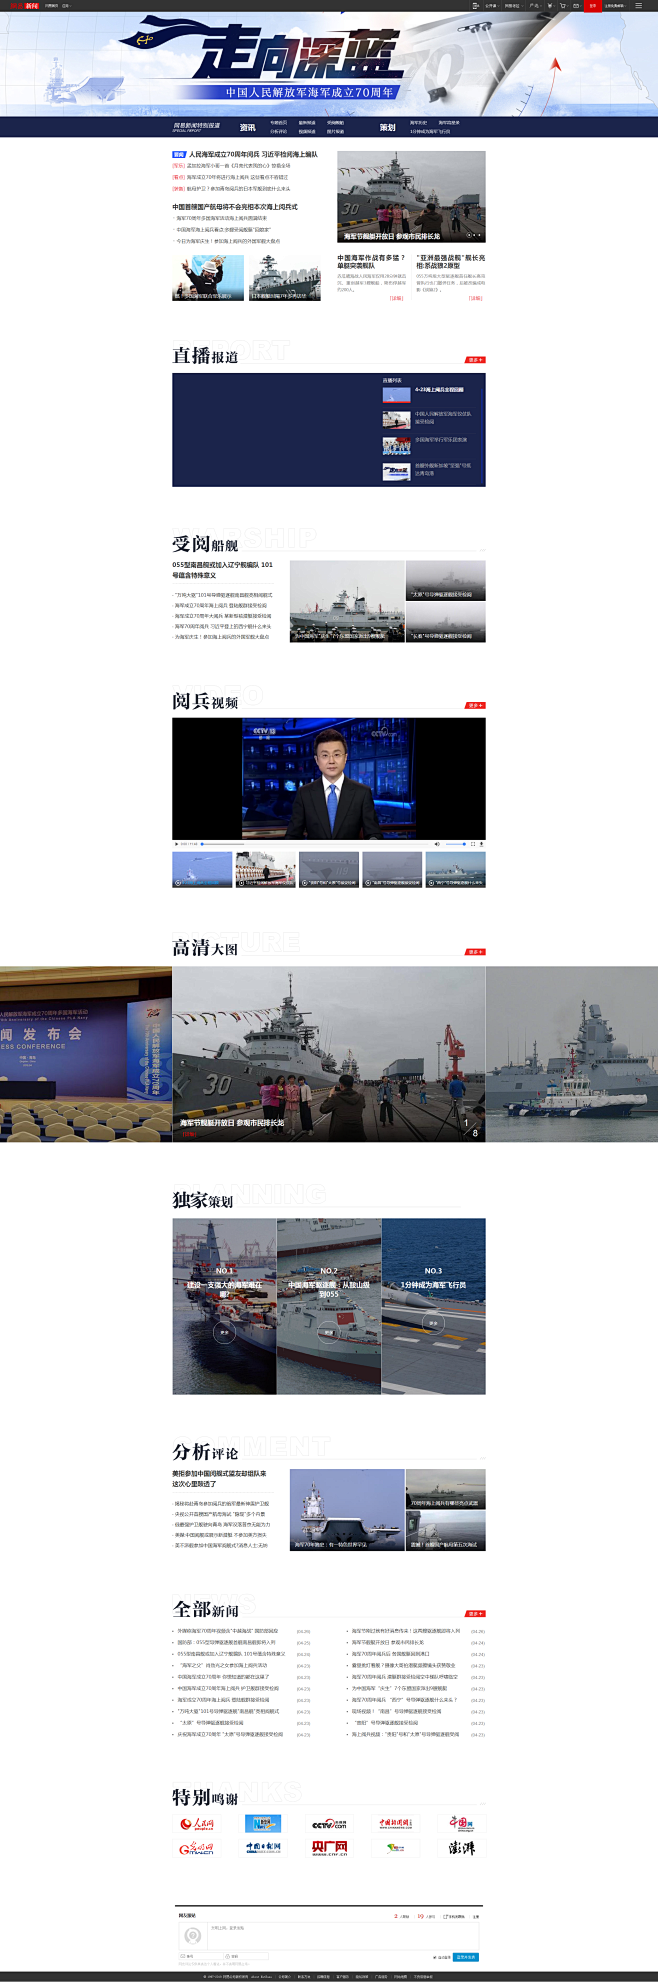 海军成立70周年_网易新闻_网易网